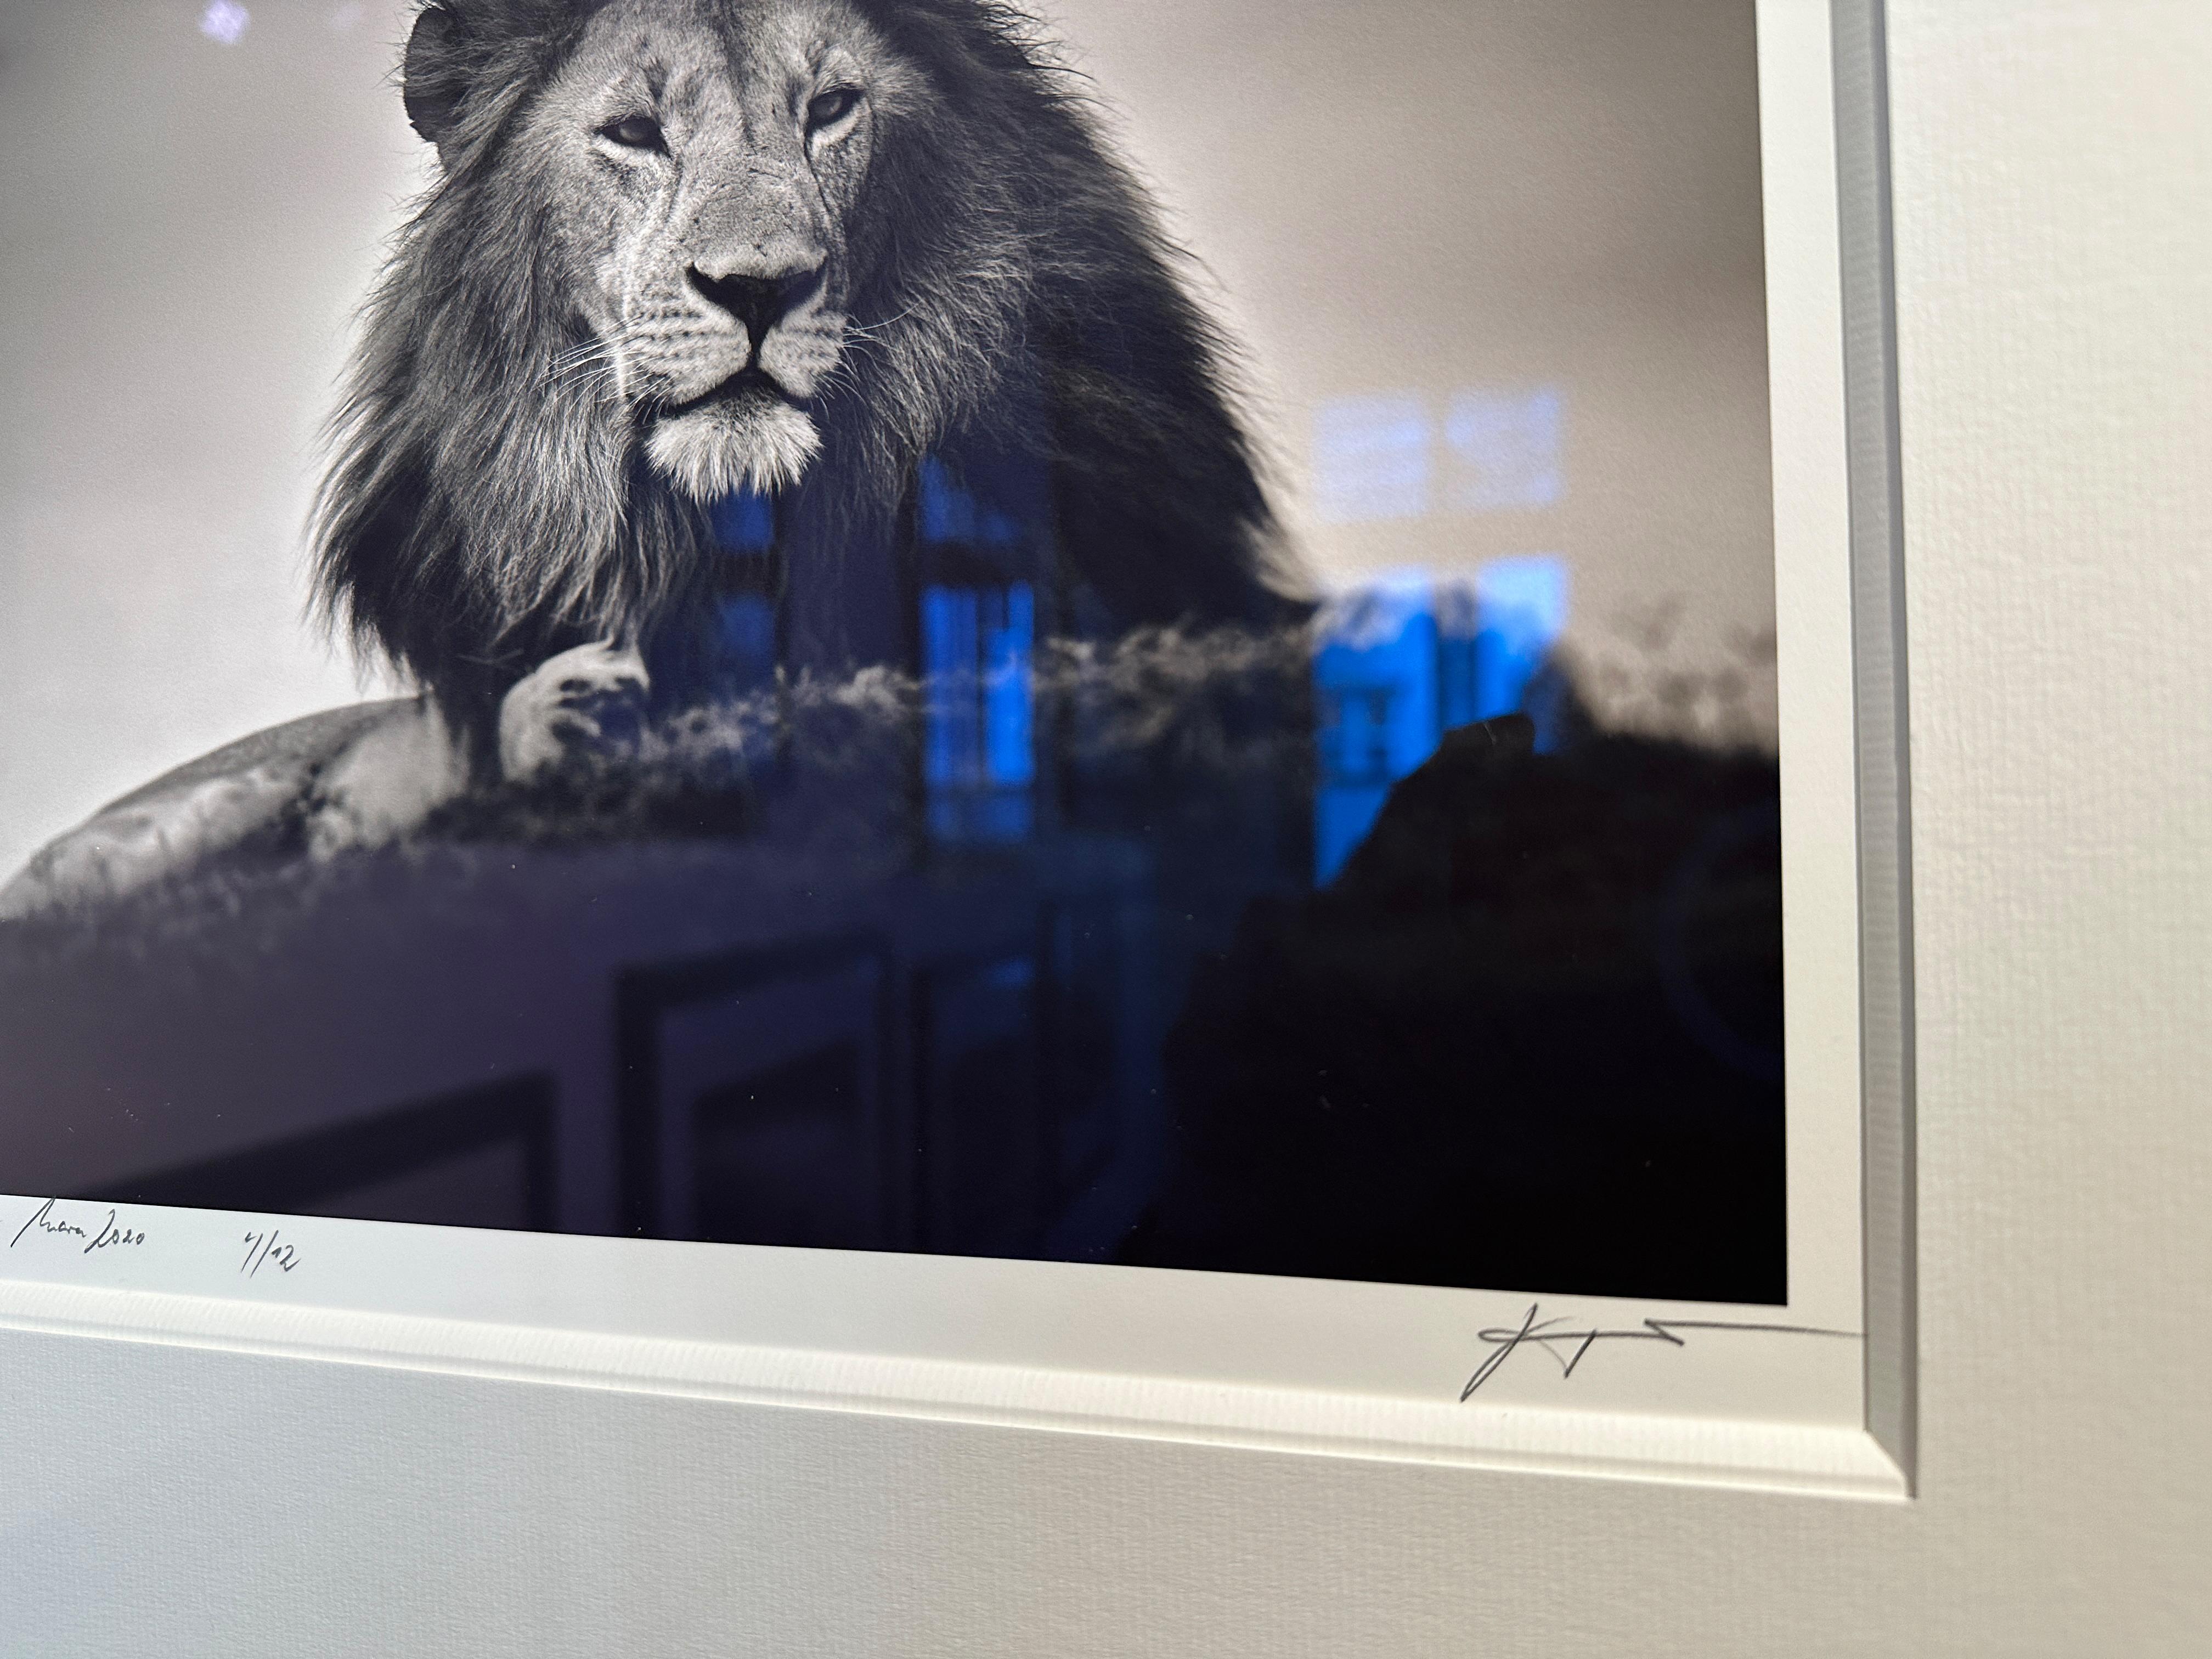 Ausgabe Nr. 4/12
Bildgröße 28 x 28 cm
signiert und nummeriert
Gerahmt mit Passepartout und Antireflexglas

Porträt eines männlichen Löwen in Kenia, Masai Mara.

Joachim Schmeisser wird von führenden Galerien weltweit vertreten. Seine Fotografien